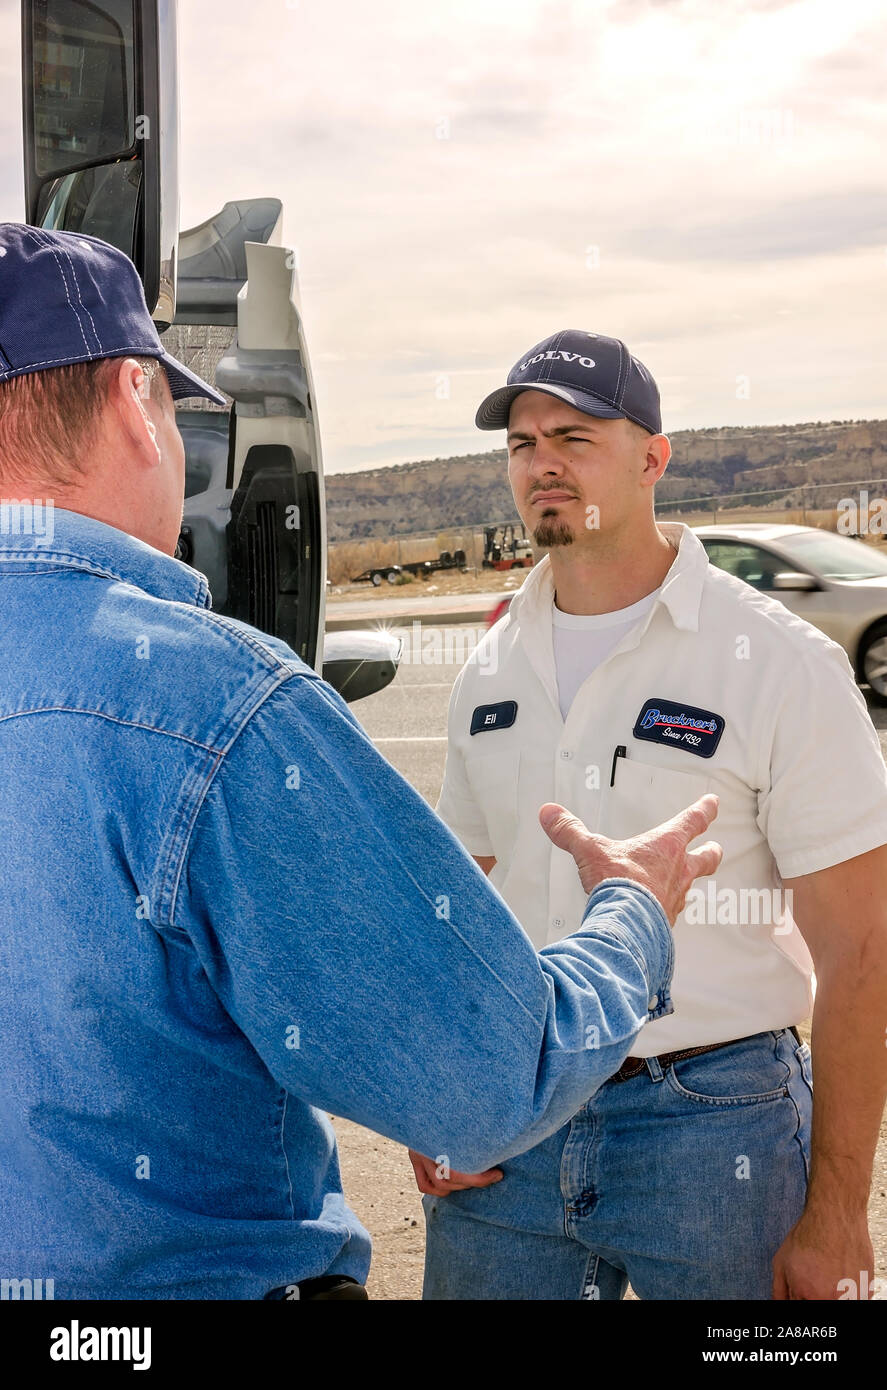 Una Volvo service manager ascolta come un cliente descrive un problema di assistenza, nov. 15, 2017, a Bruckner delle vendite di autocarri di Farmington, Nuovo Messico. Foto Stock